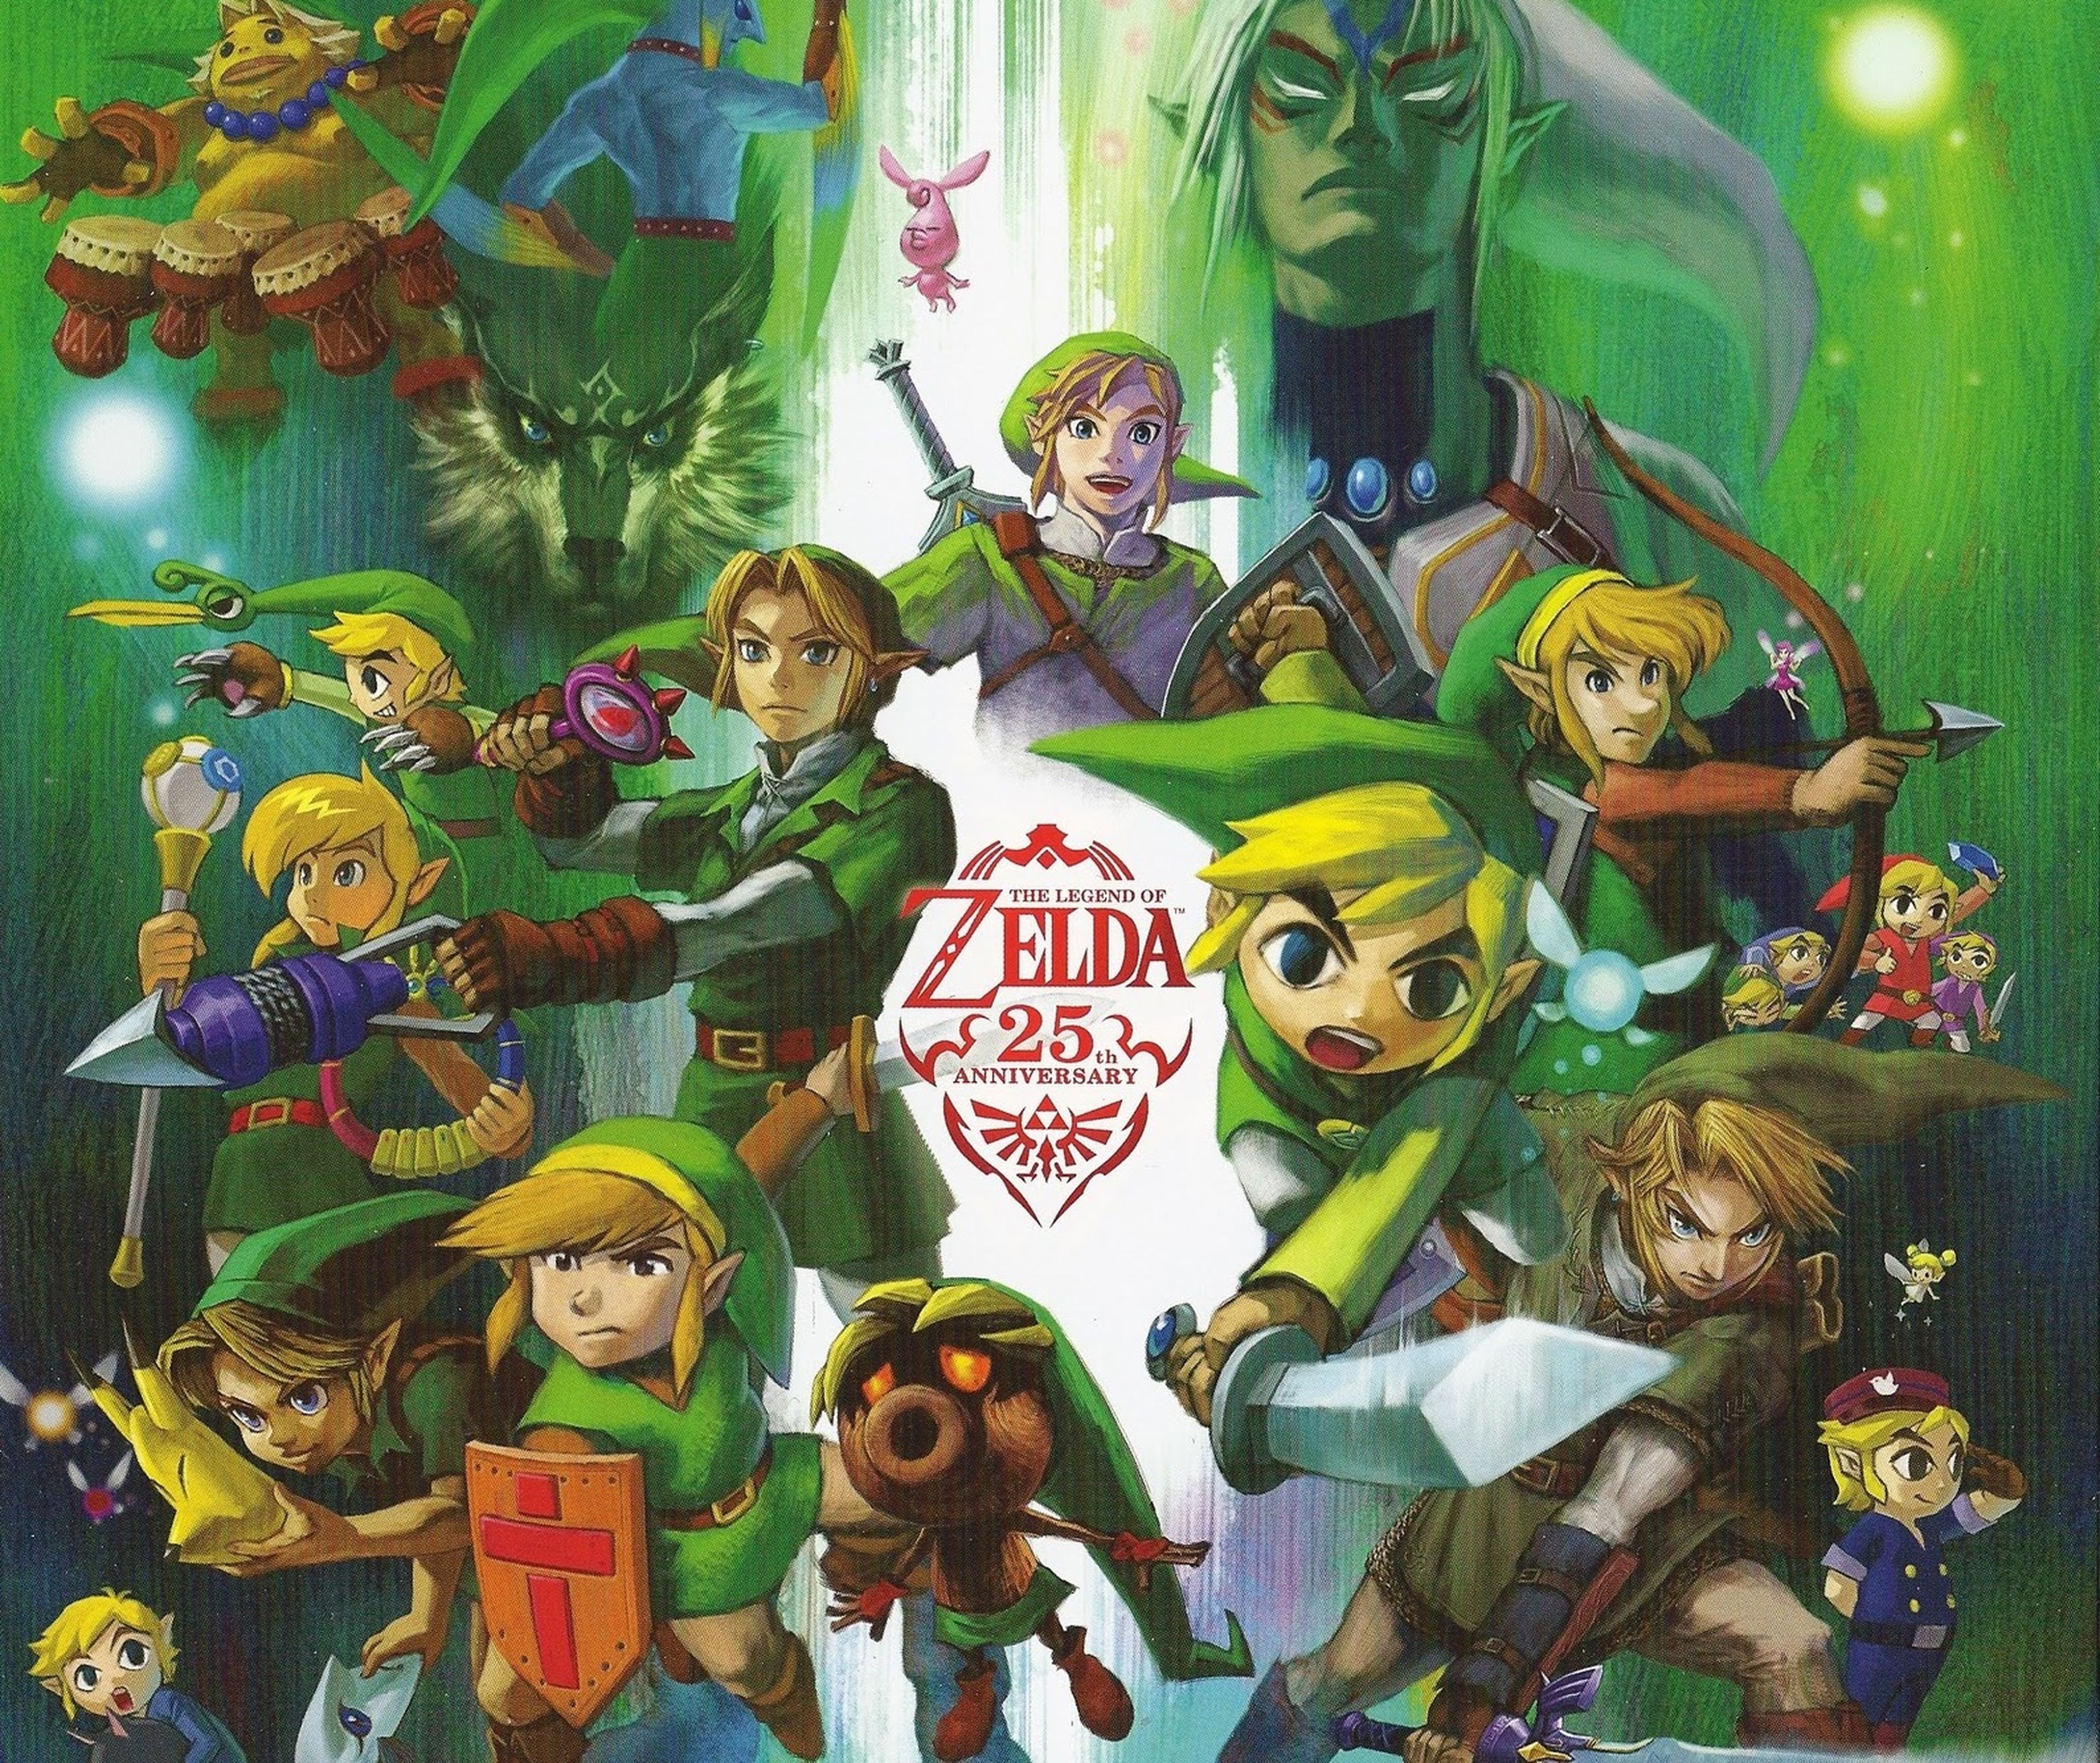 Comparativa de notas, ventas y duración de la saga Zelda